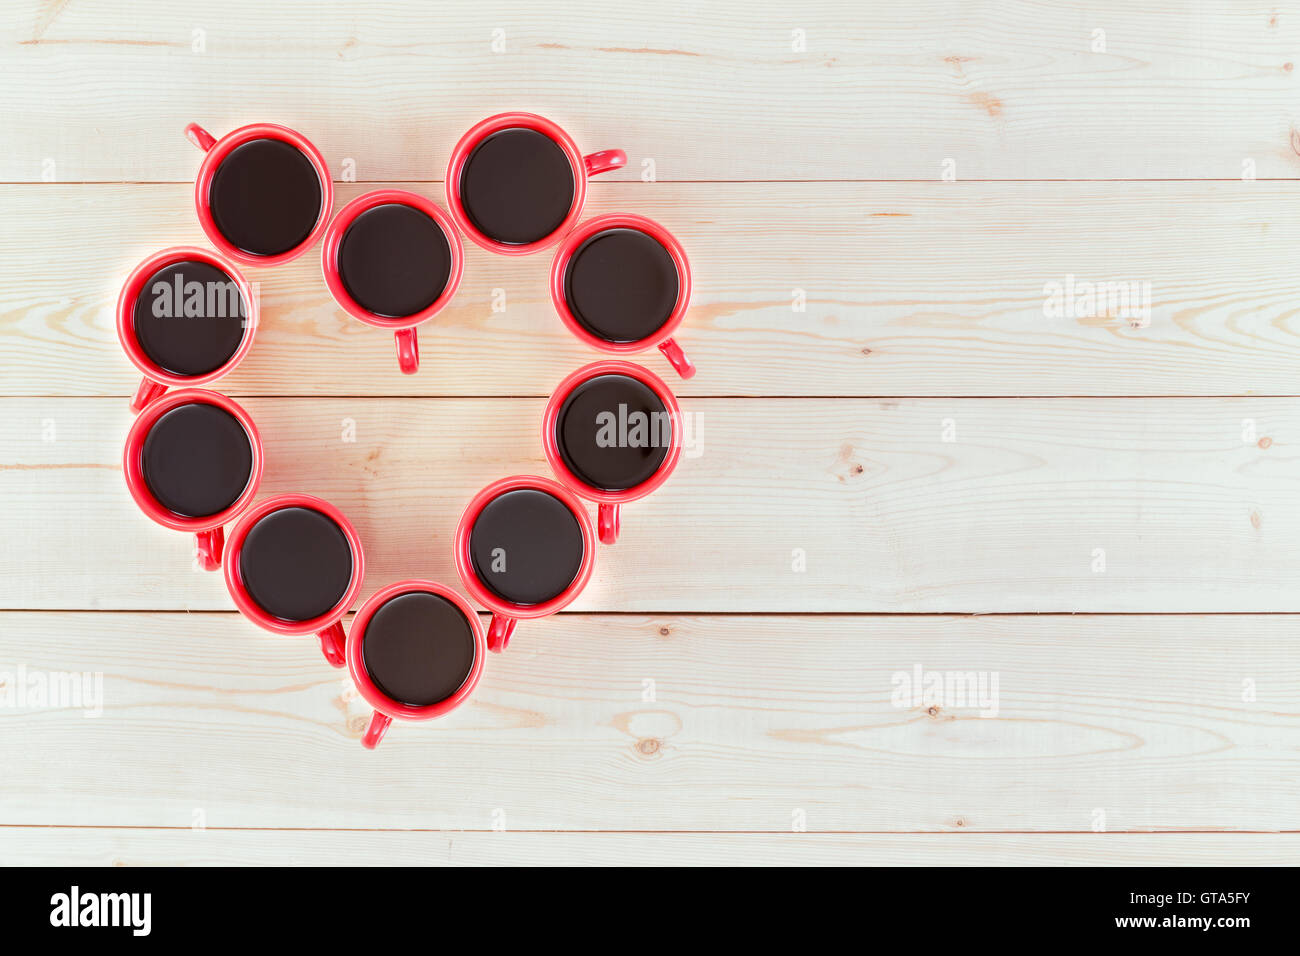 Te hace feliz concepto de café con café expresso el café en tazas arrabged rojo en forma de corazón sobre pizarras blancas con Foto de stock